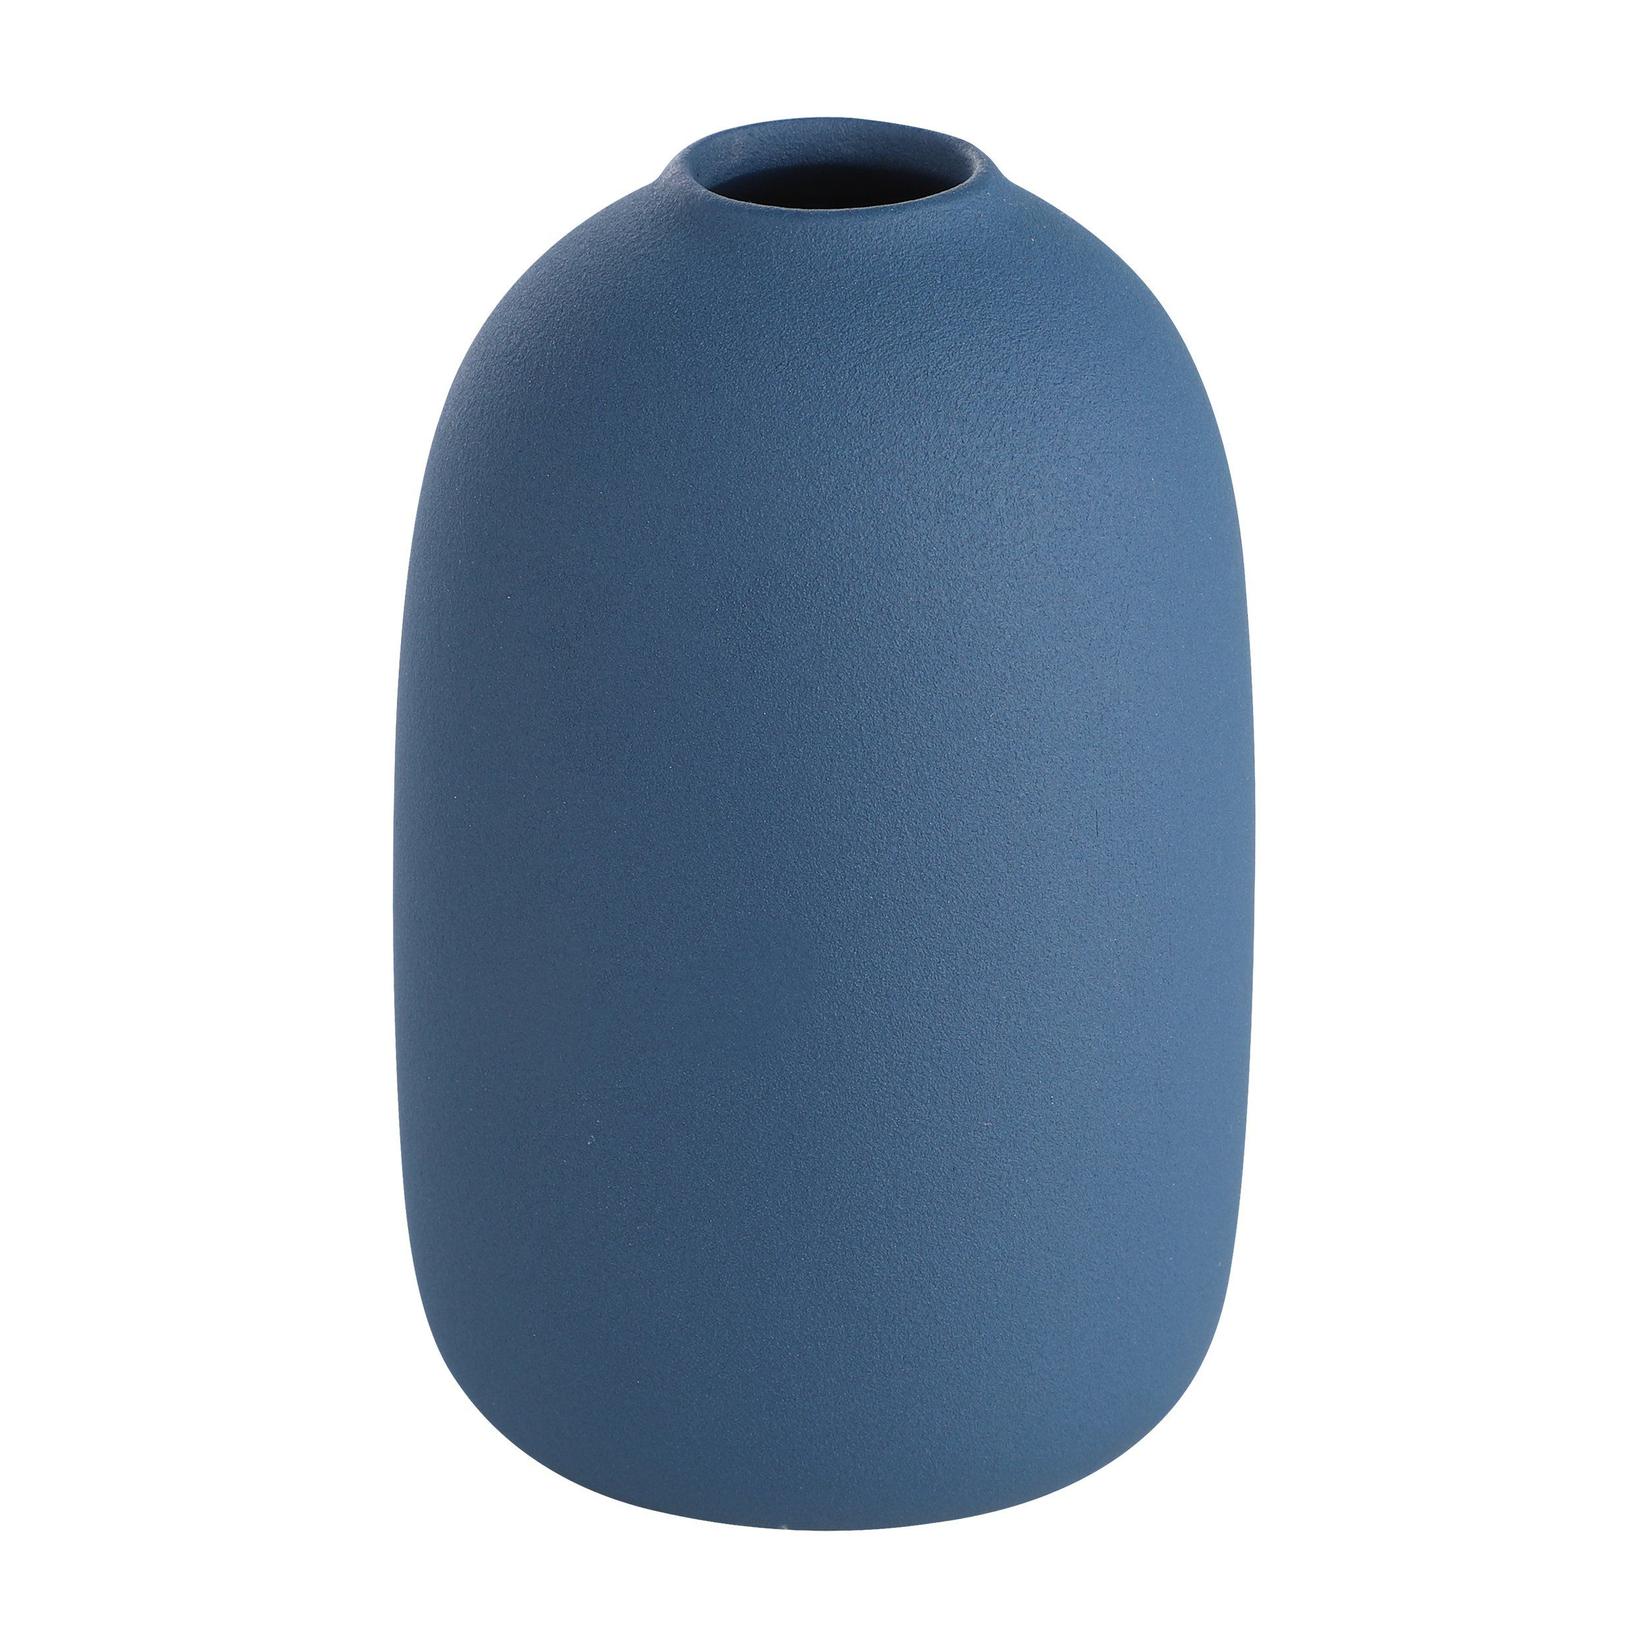 EGLO Keramička vaza Anjabe plava